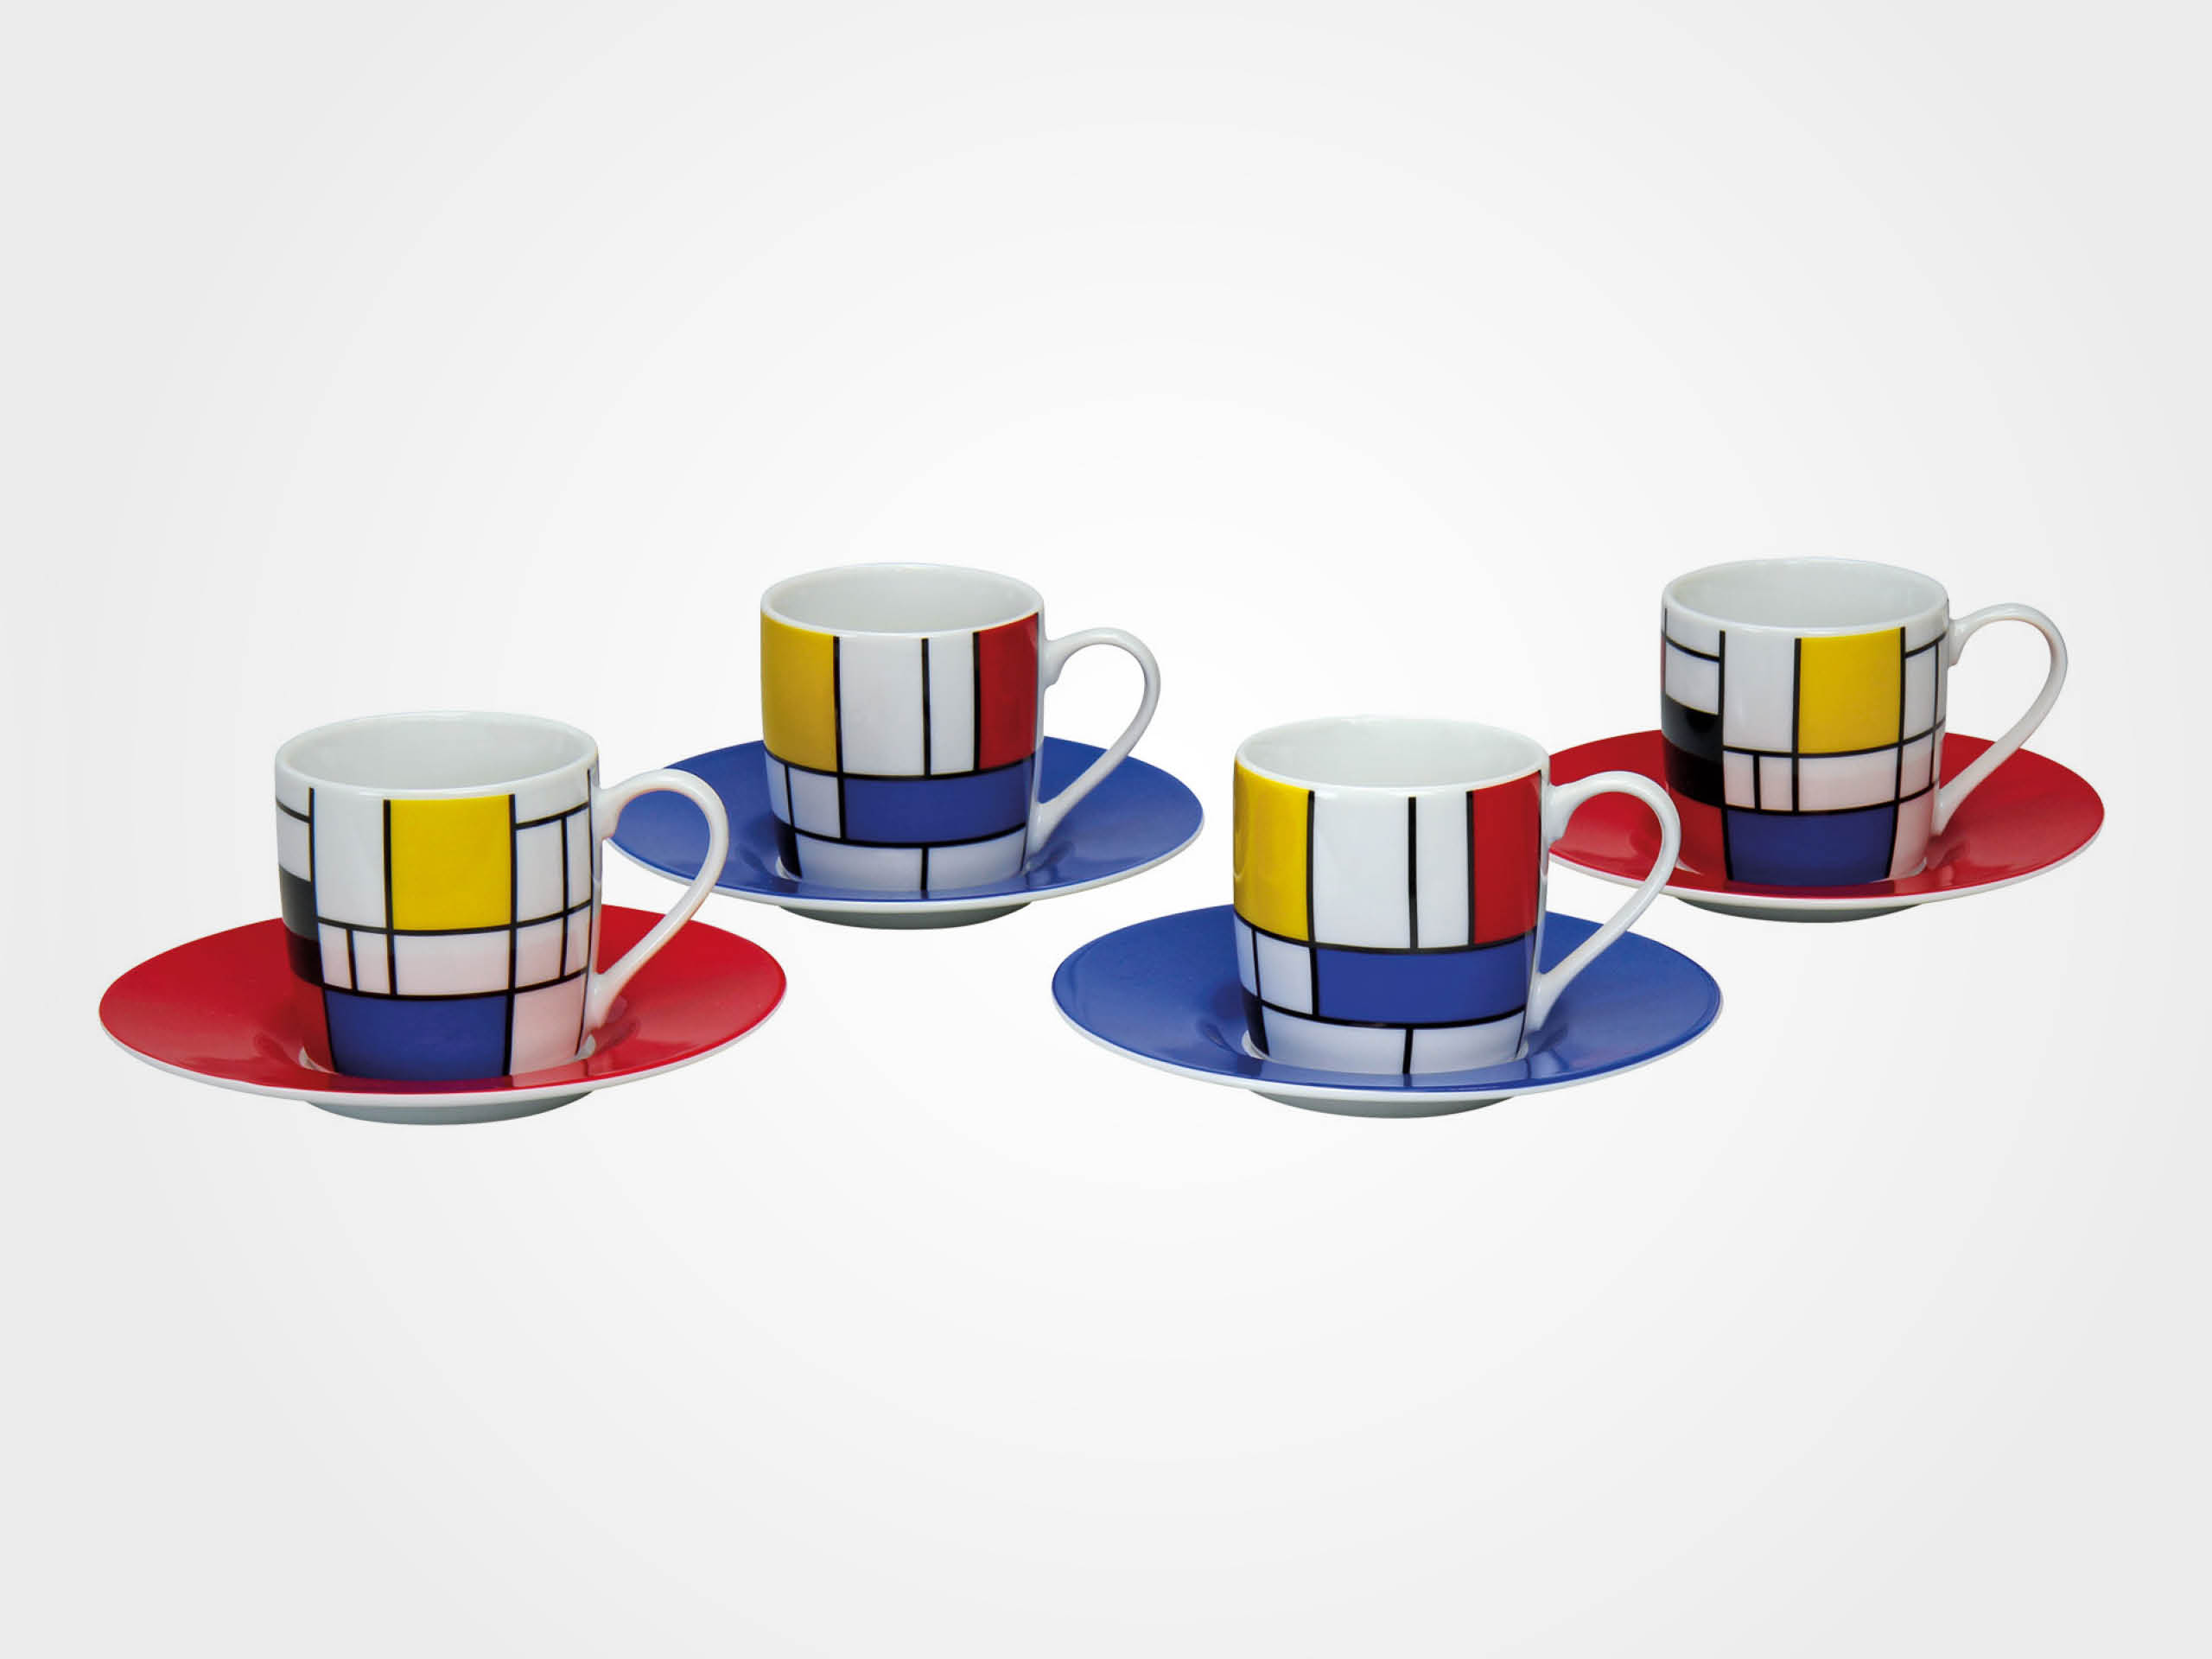 Piet Mondrian: 4 Espressotassen mit Künstlermotiven im Set, Porzellan